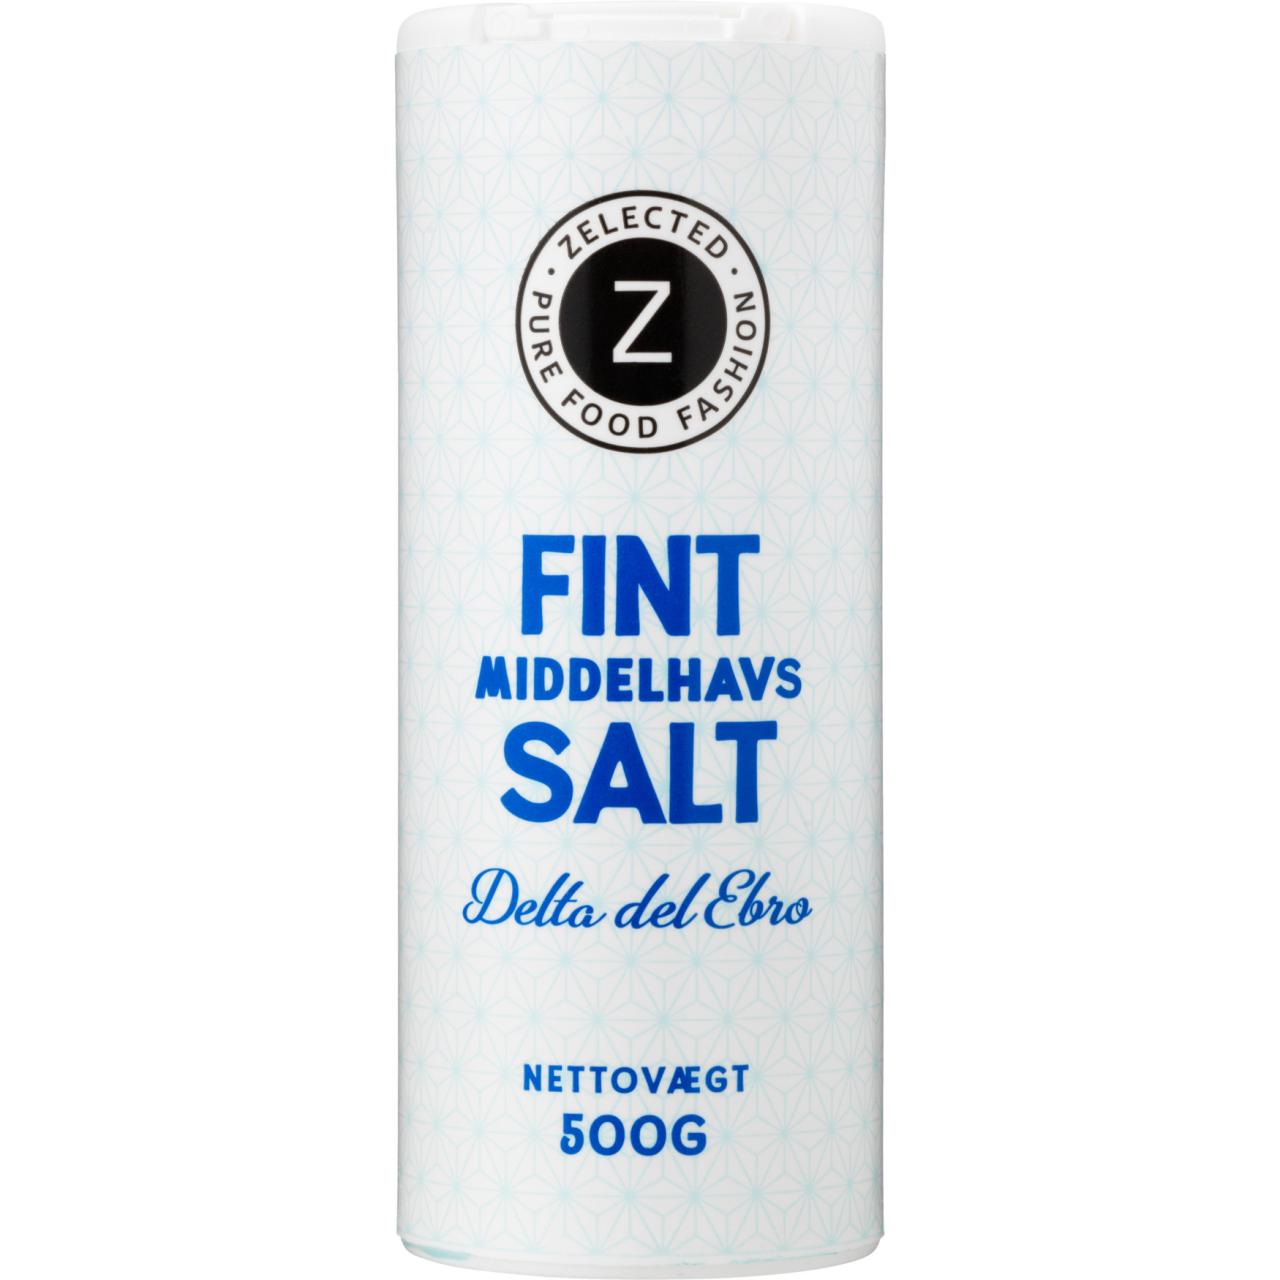 Zelected Fint Middelhavs Salt/Salz 500g